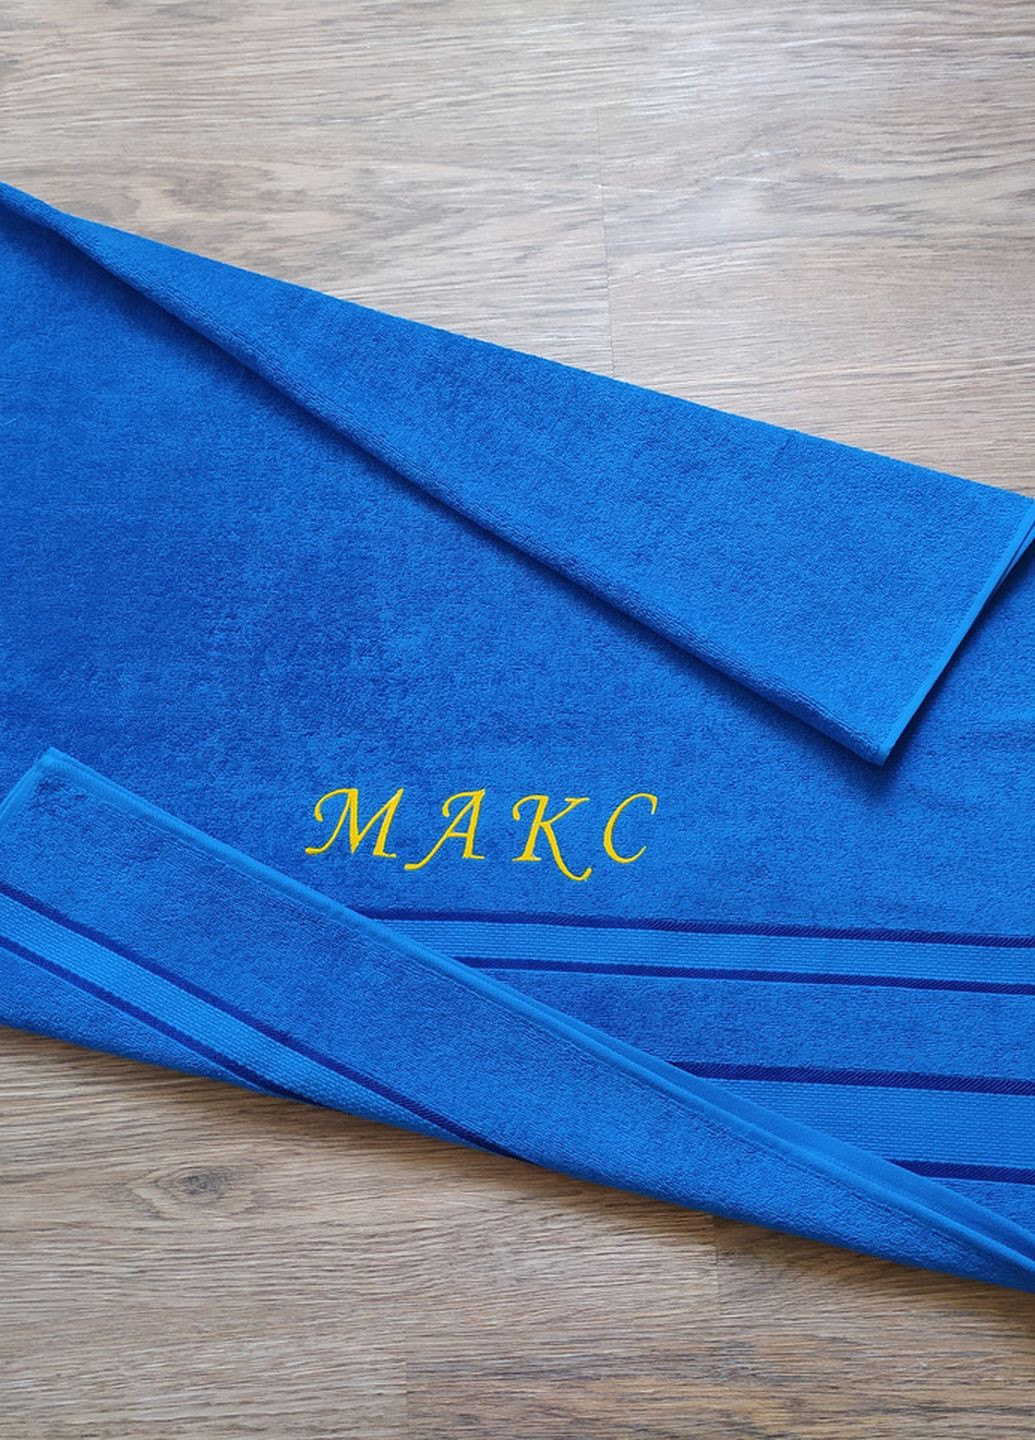 No Brand полотенце с именной вышивкой махровое банное 70*140 синий парню макс 00027 однотонный синий производство - Украина